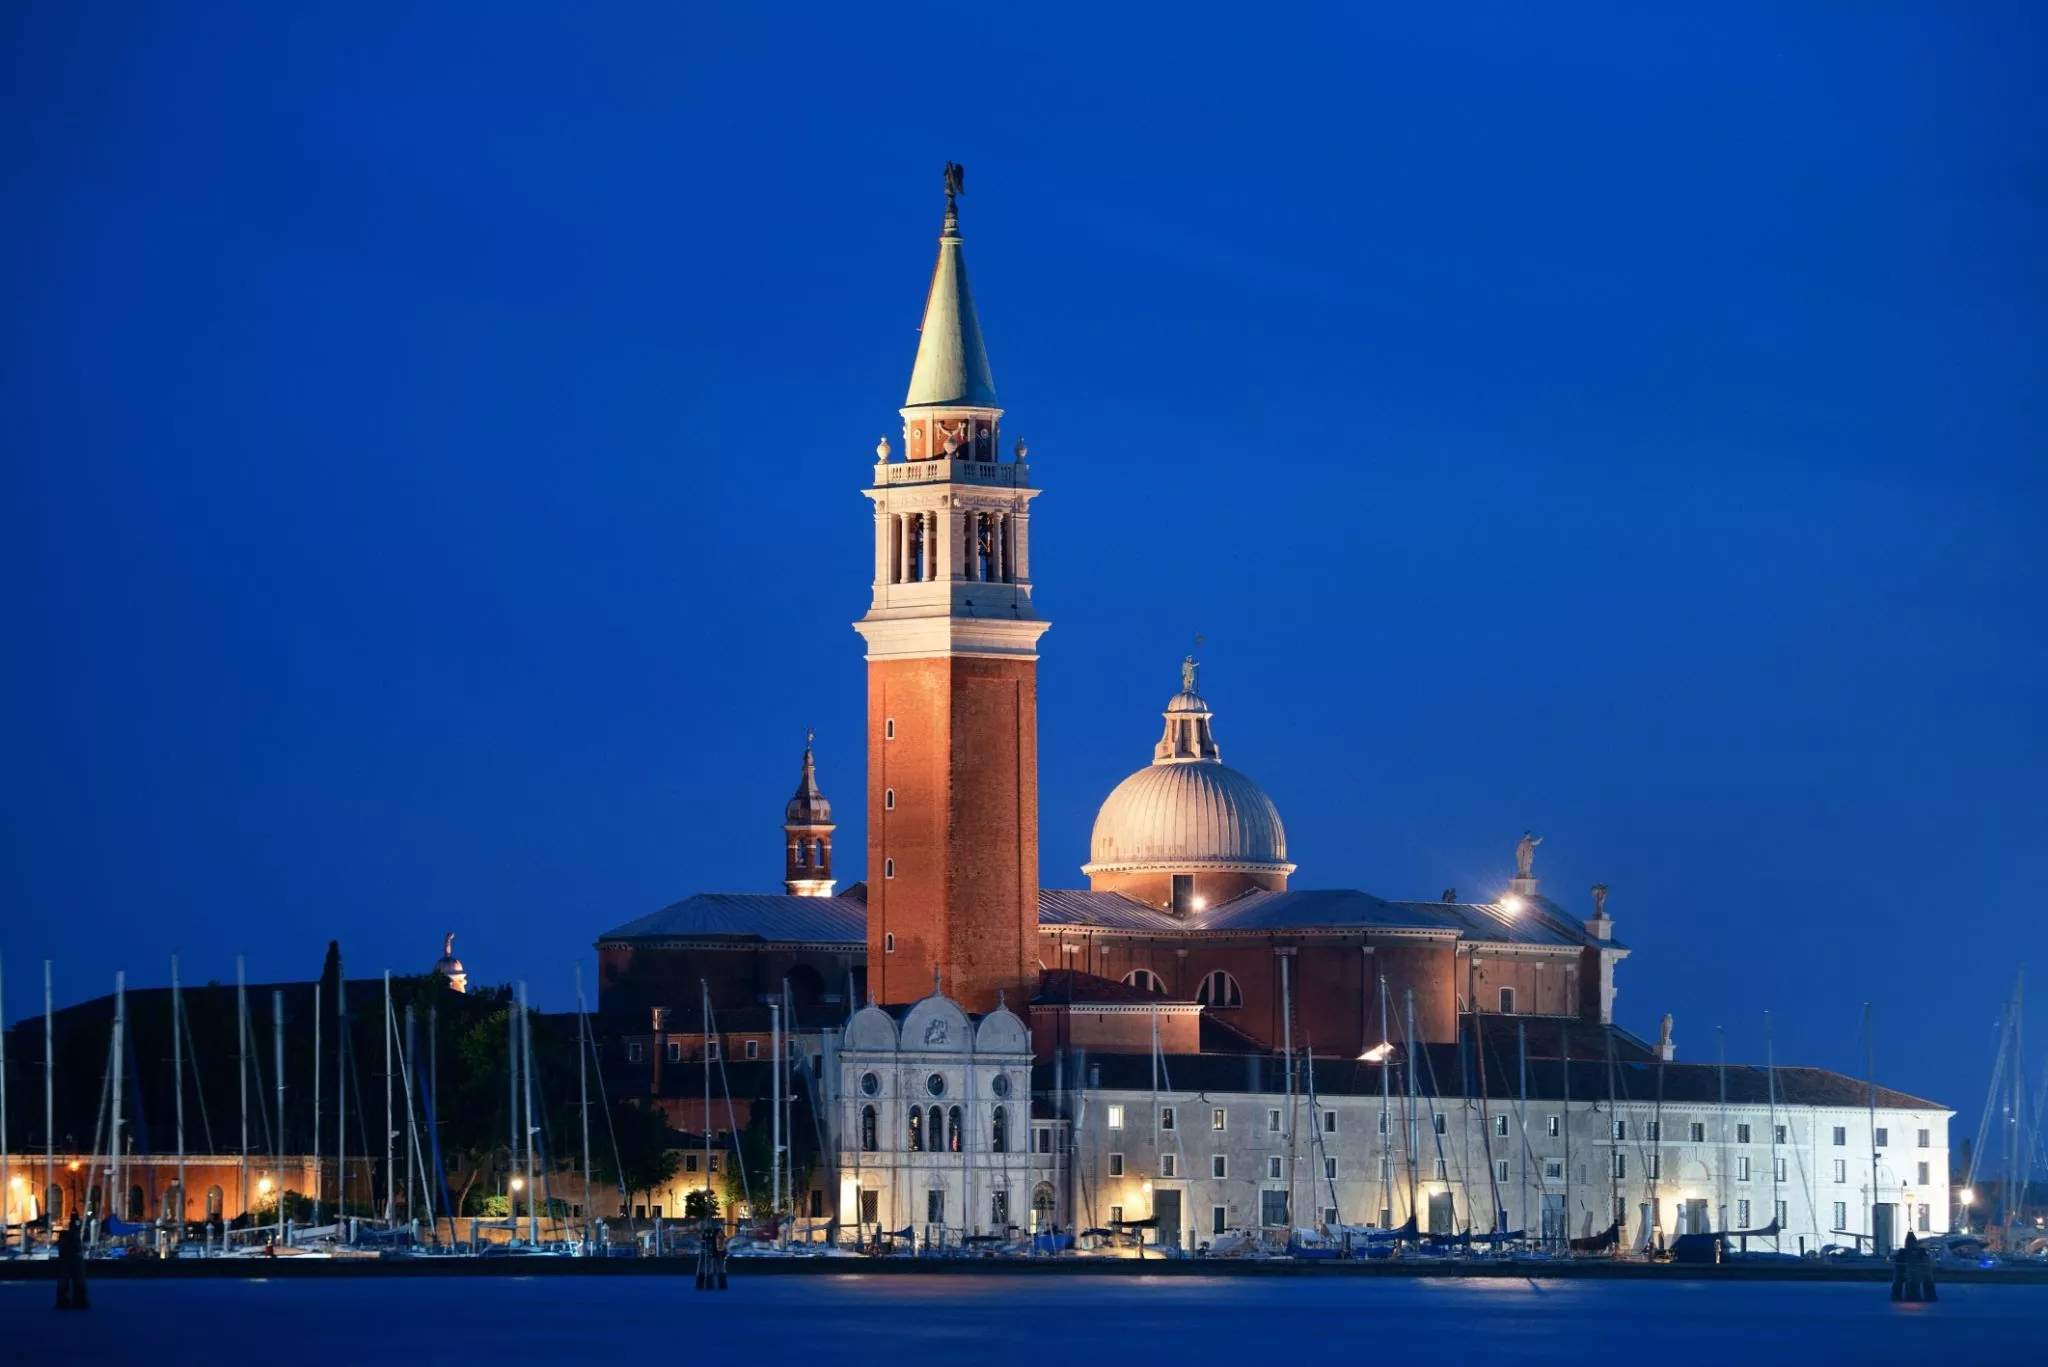 San Giorgio Maggiore in Italy, Europe | Architecture - Rated 3.8